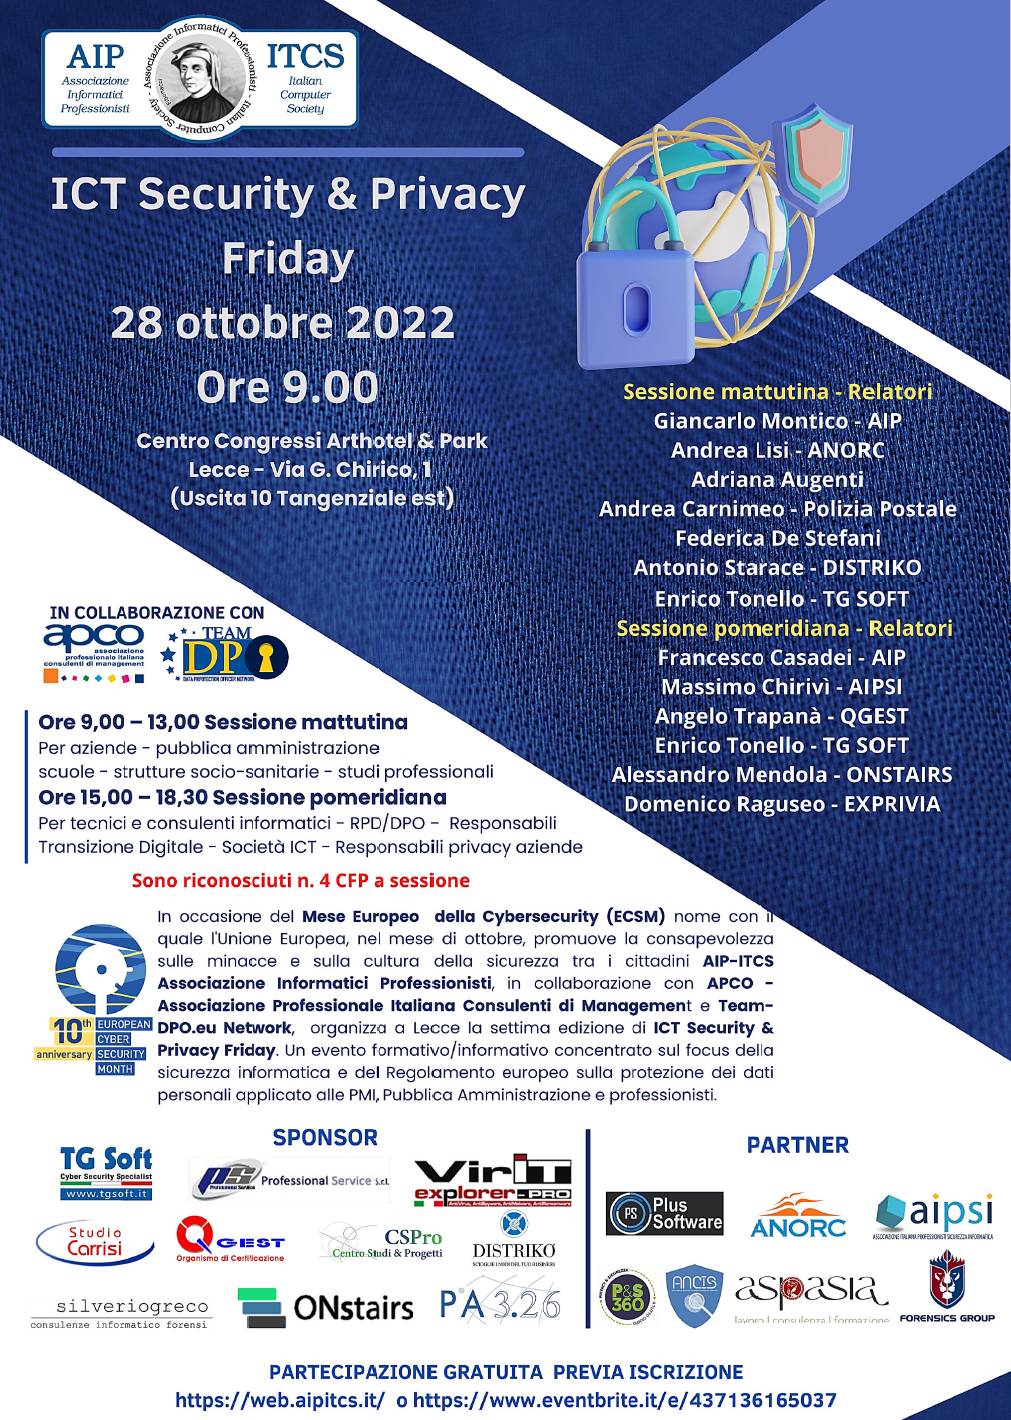 Incontro ICT Security & Privacy Friday =>  28 Ottobre 2022 c/o Centro Congressi ArtHotle & Park Lecce.